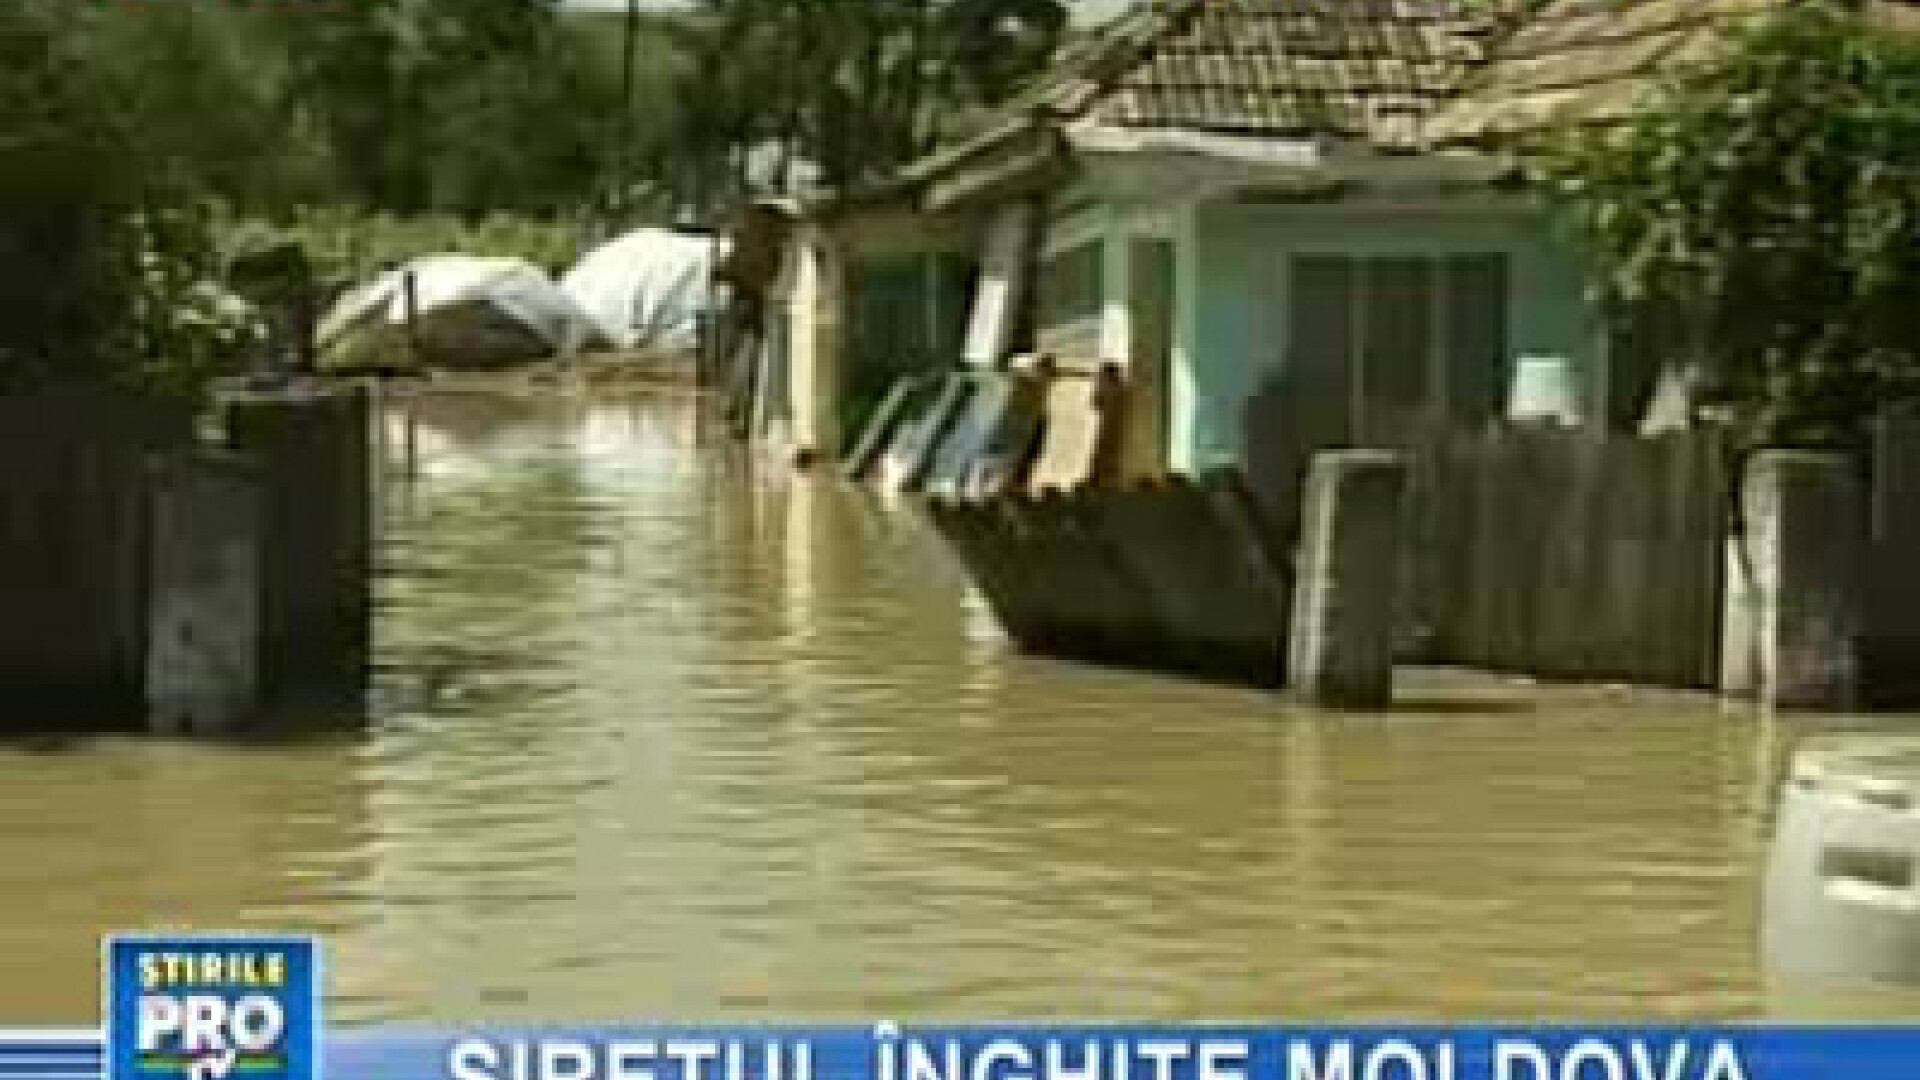 Inundaţii în Moldova